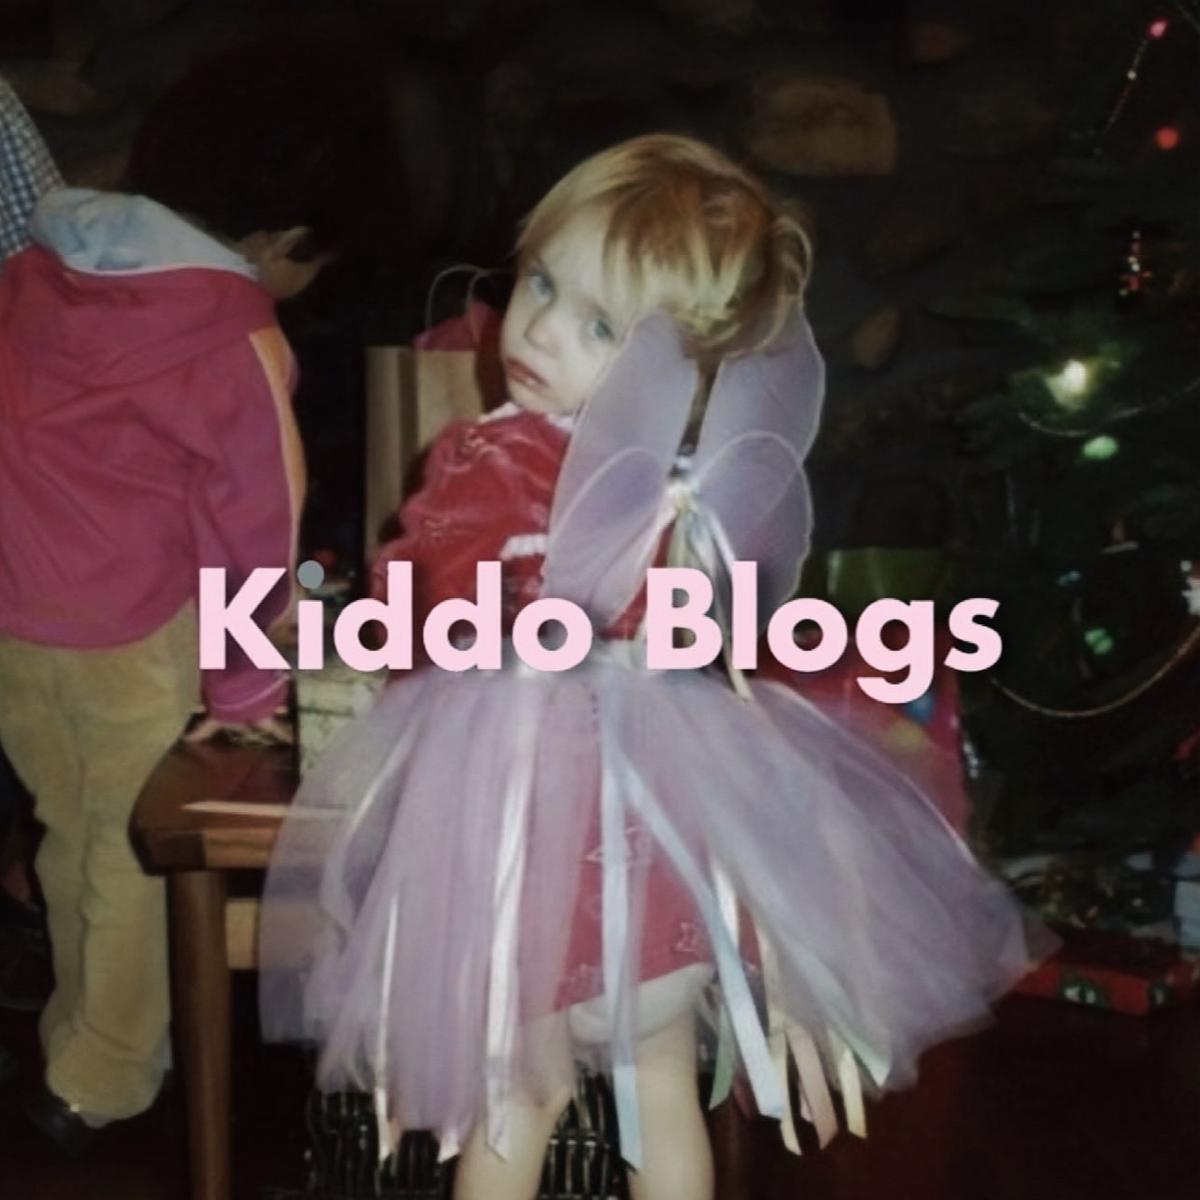 kiddo blogs